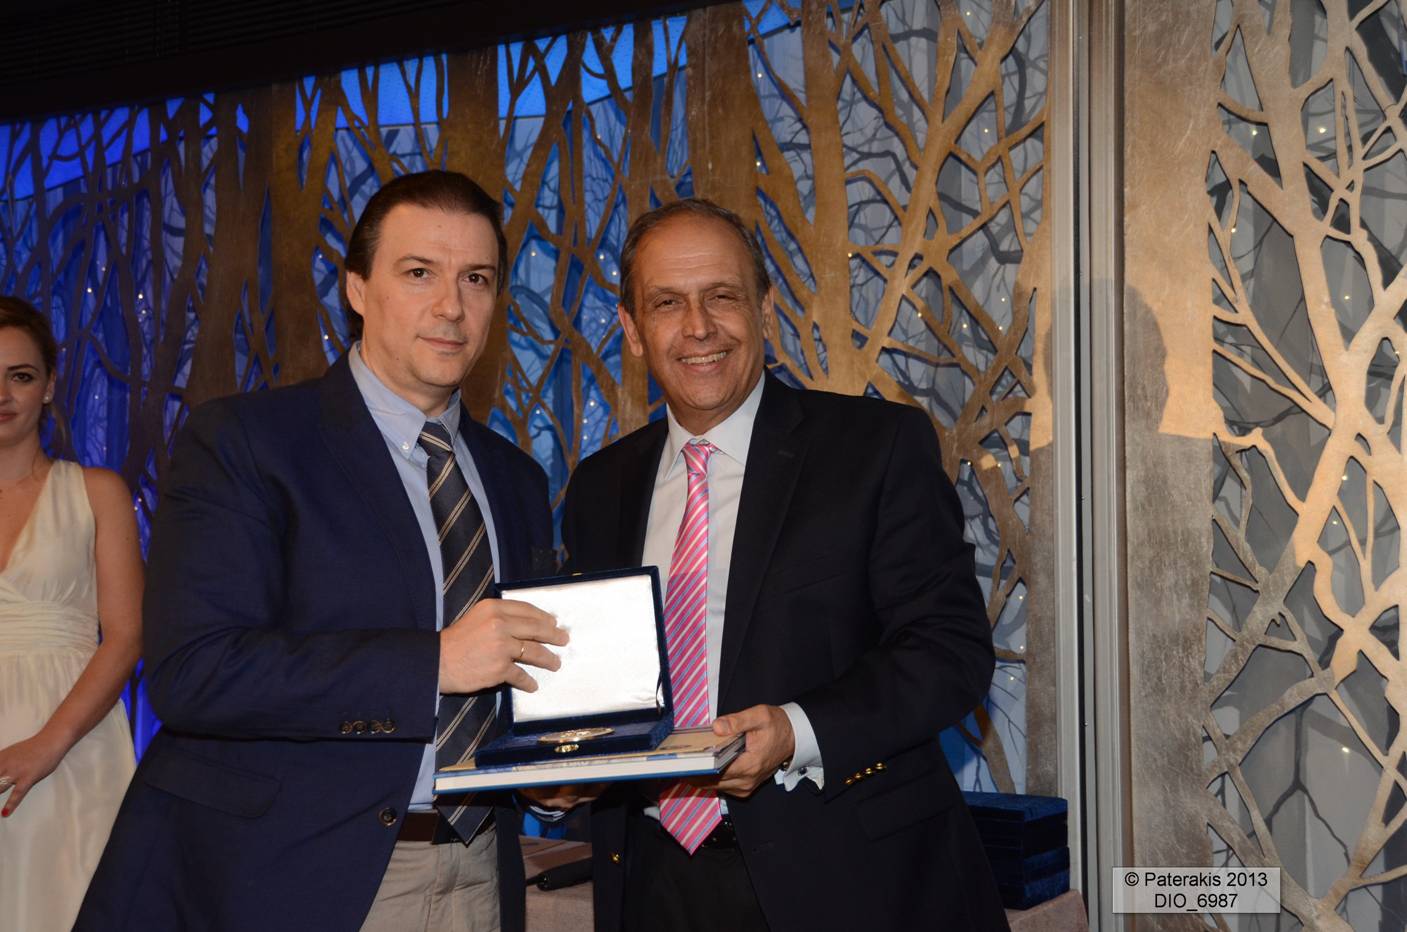 Η Λουξ Μαρλαφέκας απέσπασε ένα από τα βραβεία στα «Διαμάντια της Ελληνικής Οικονομίας» σε εκδήλωση που διοργάνωσε η Statbank στις 28 Μαϊου.